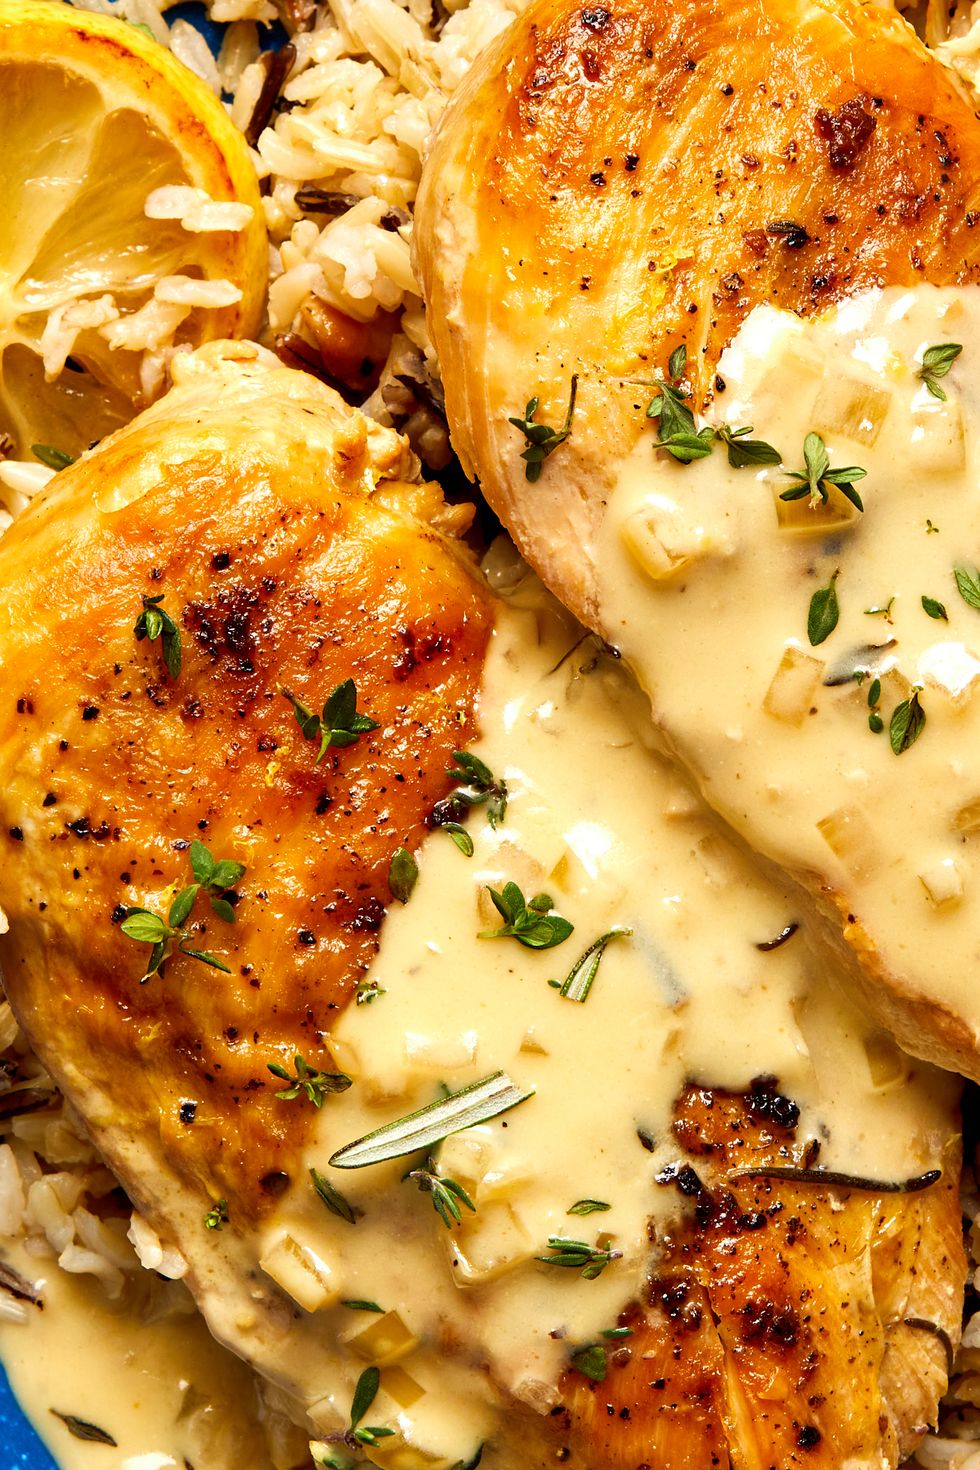 Best Crockpot Whole Chicken: An Easy & Tasty Chicken Dinner